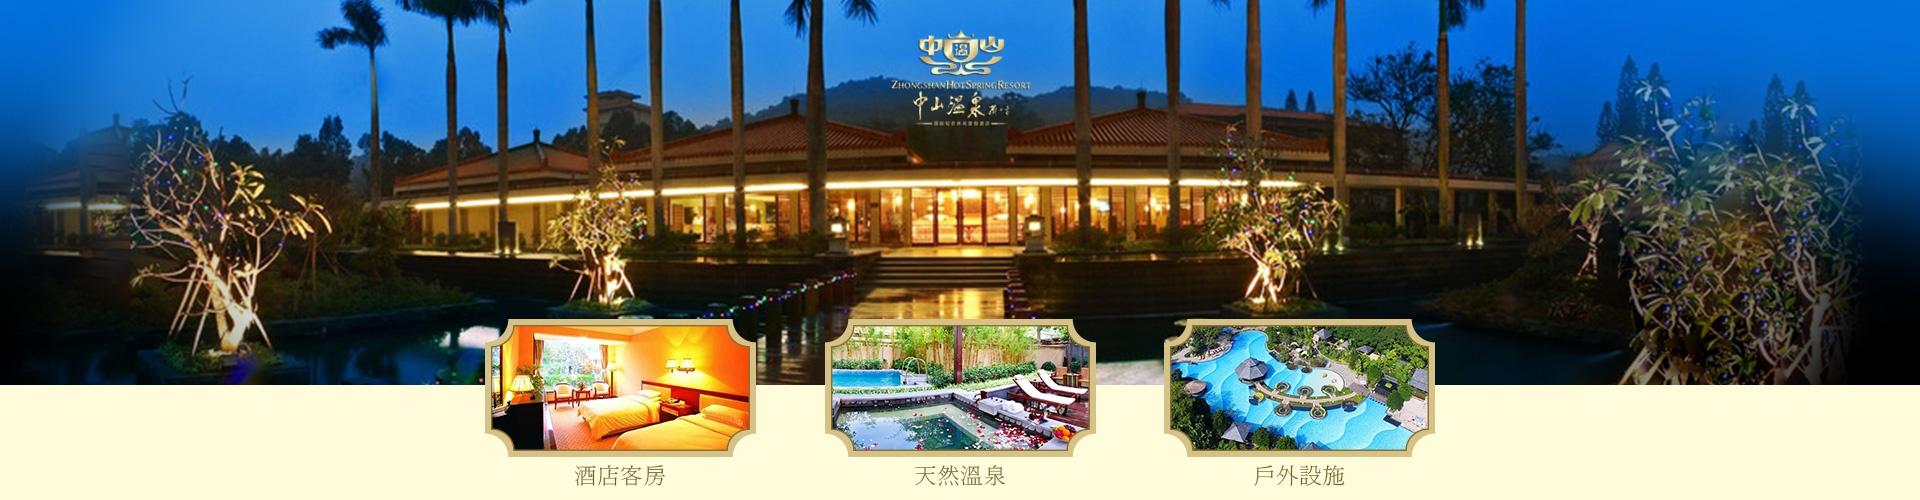 中國短線旅遊 - 中山溫泉酒店套票 Zhongshan Hot Spring Hotel